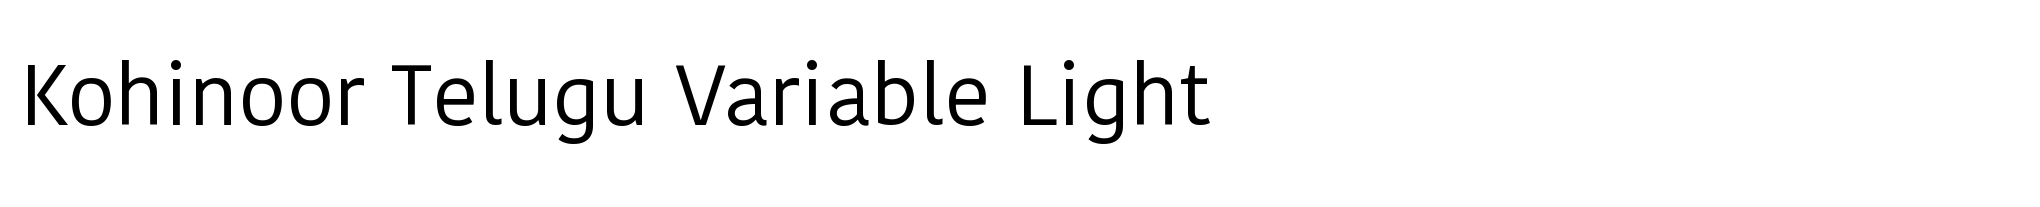 Kohinoor Telugu Variable Light image